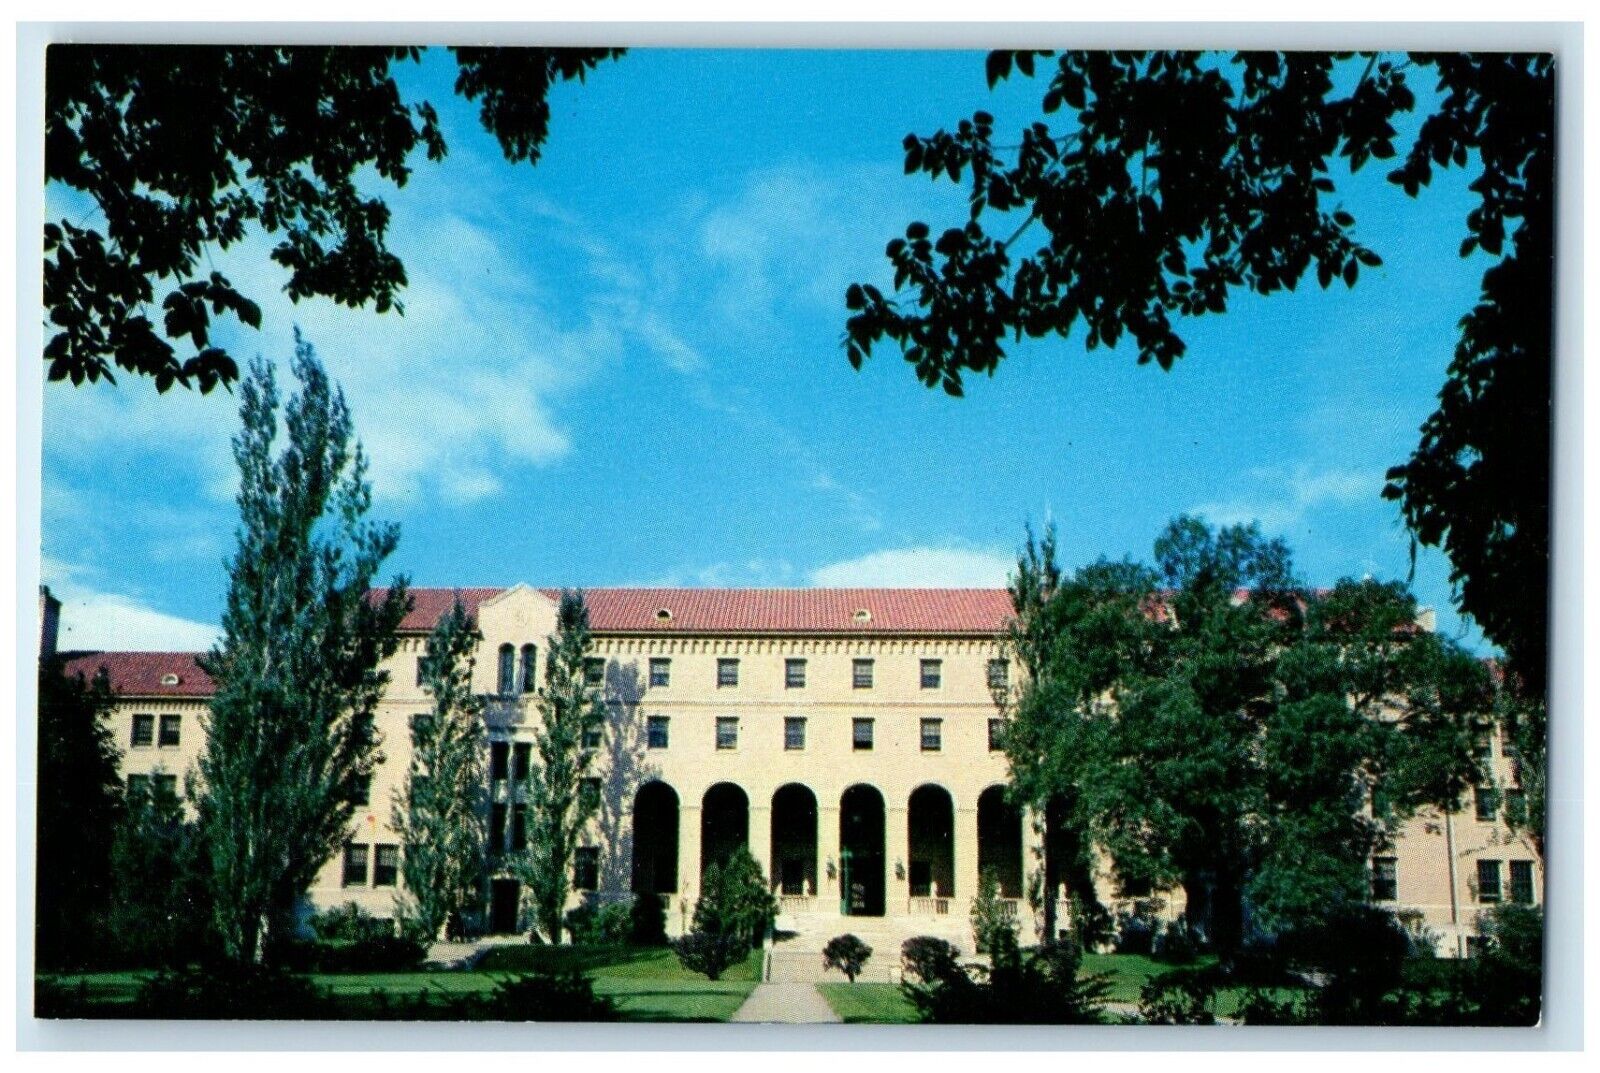 Lourdes Hall Student Residence College Of Saint Teresa Winona Minnesota Postcard